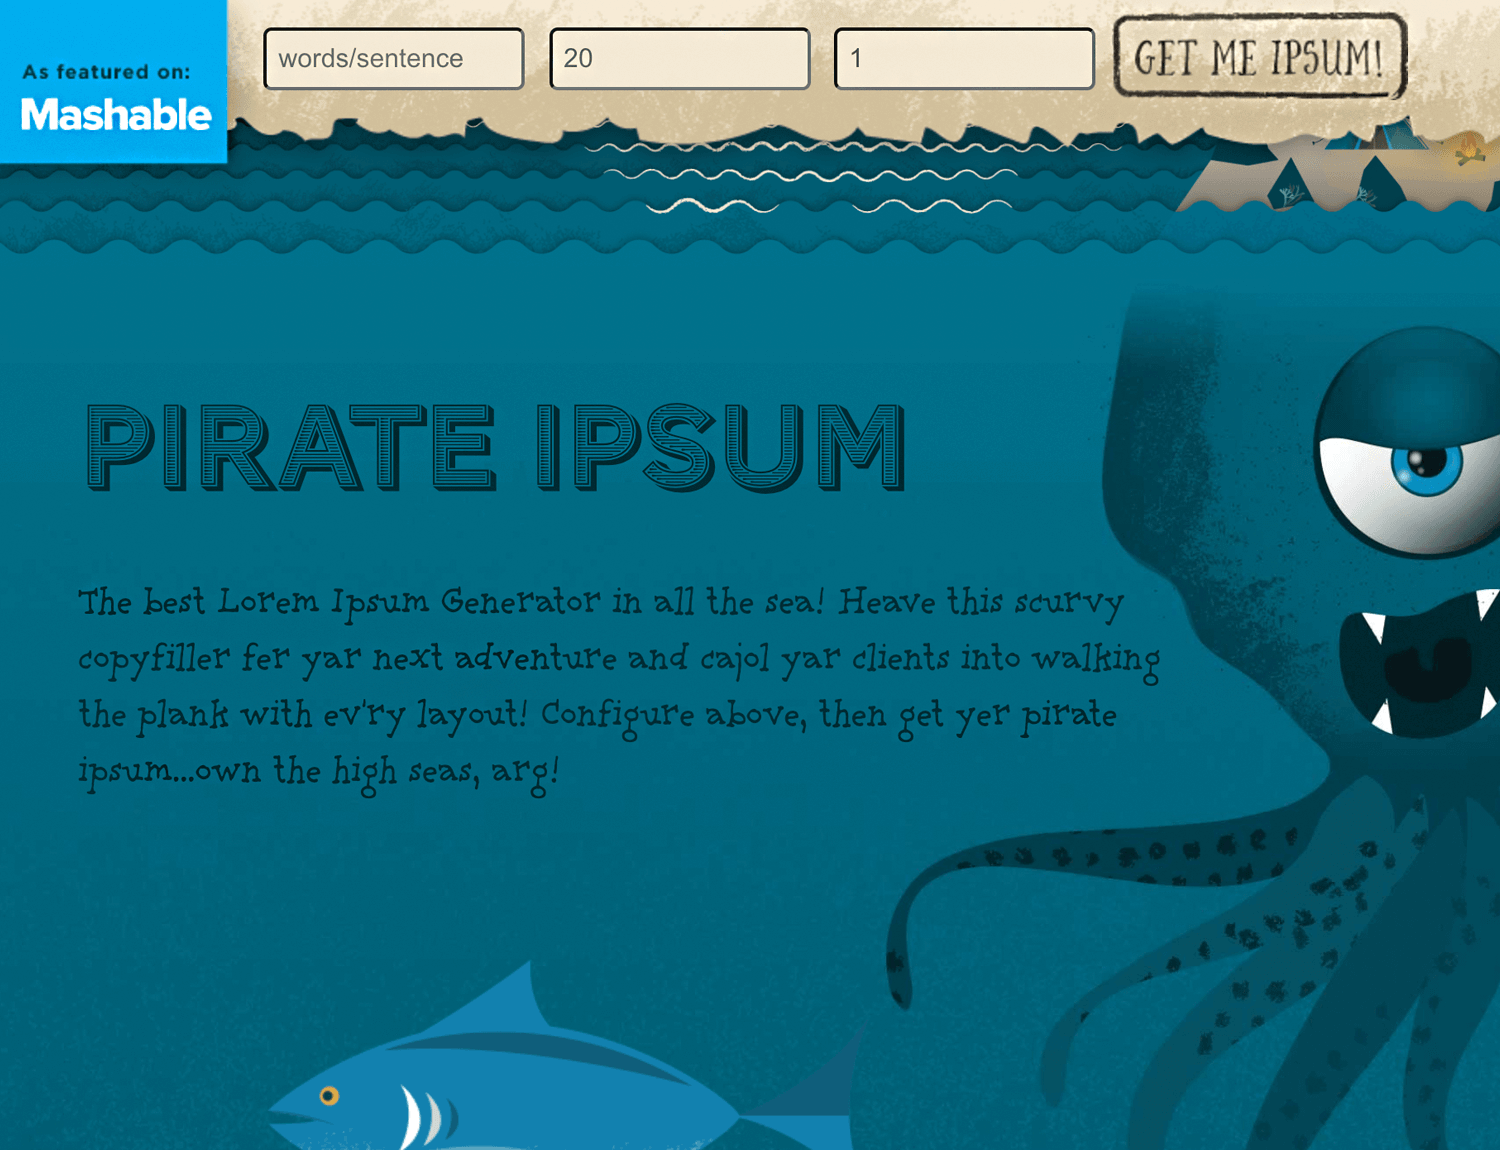 pirate ipsum as great alternative for lorem ipsum